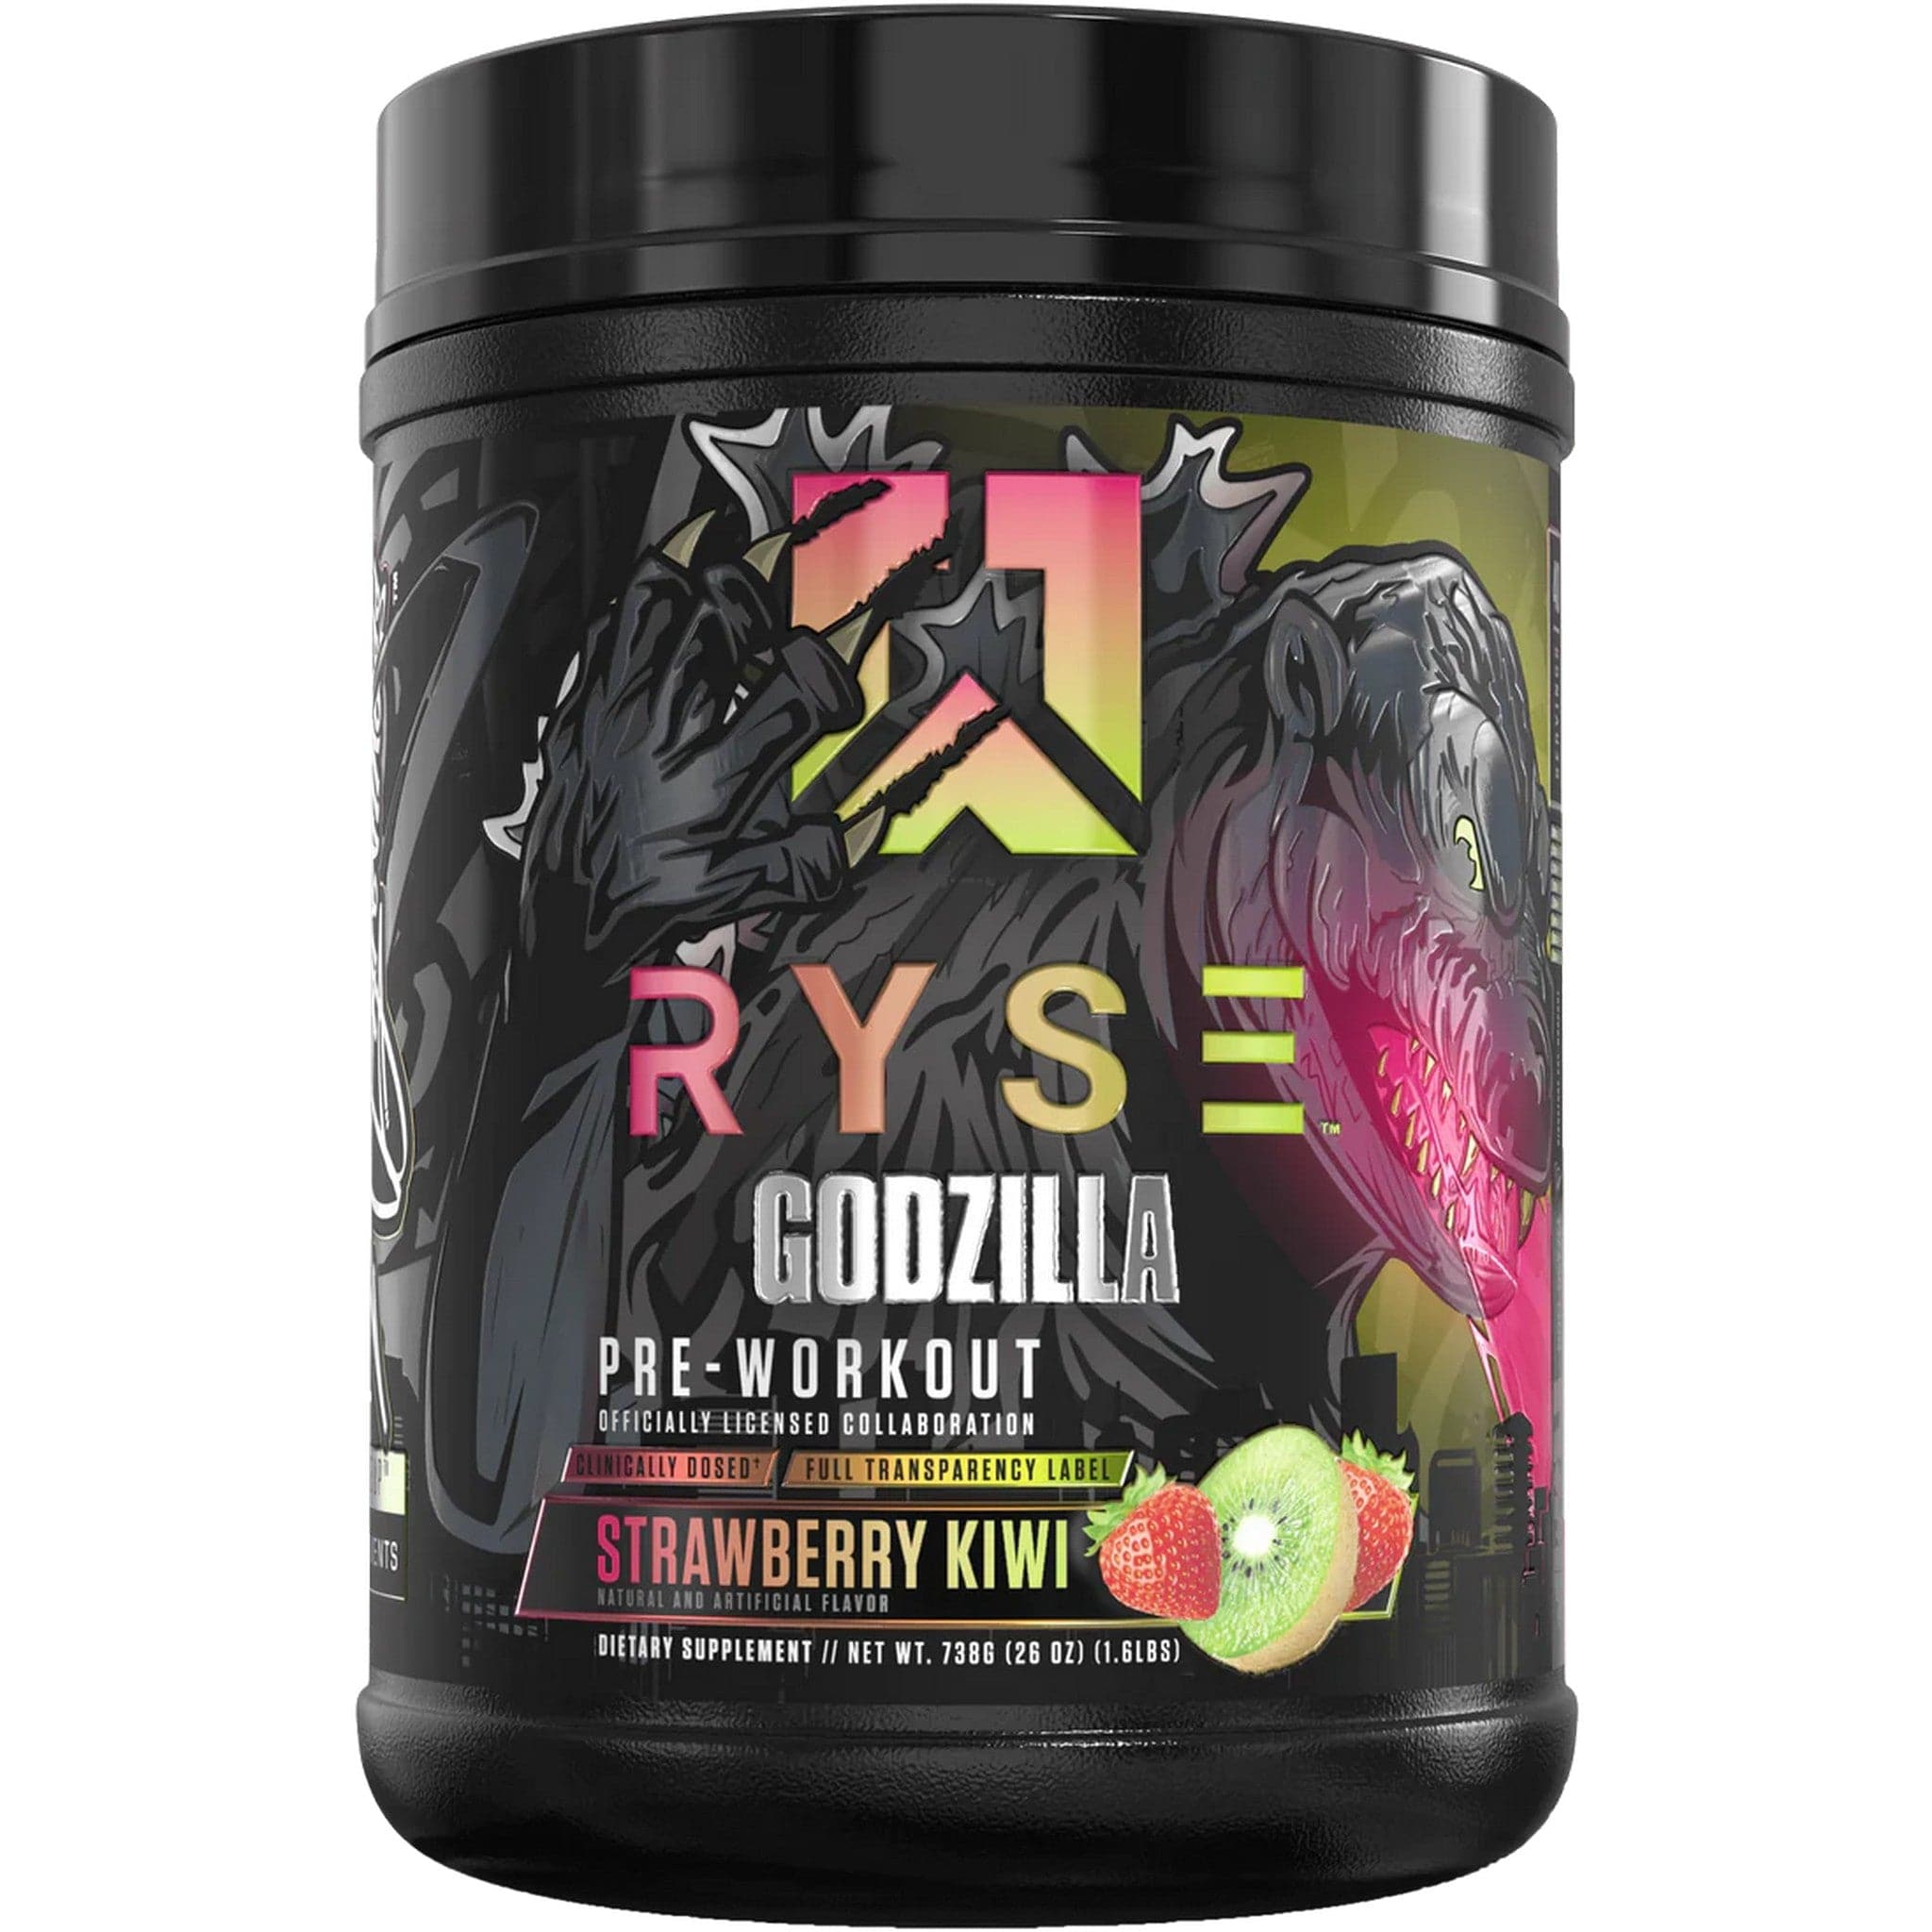 RYSE Godzilla Pre-Workout 20/40 serving